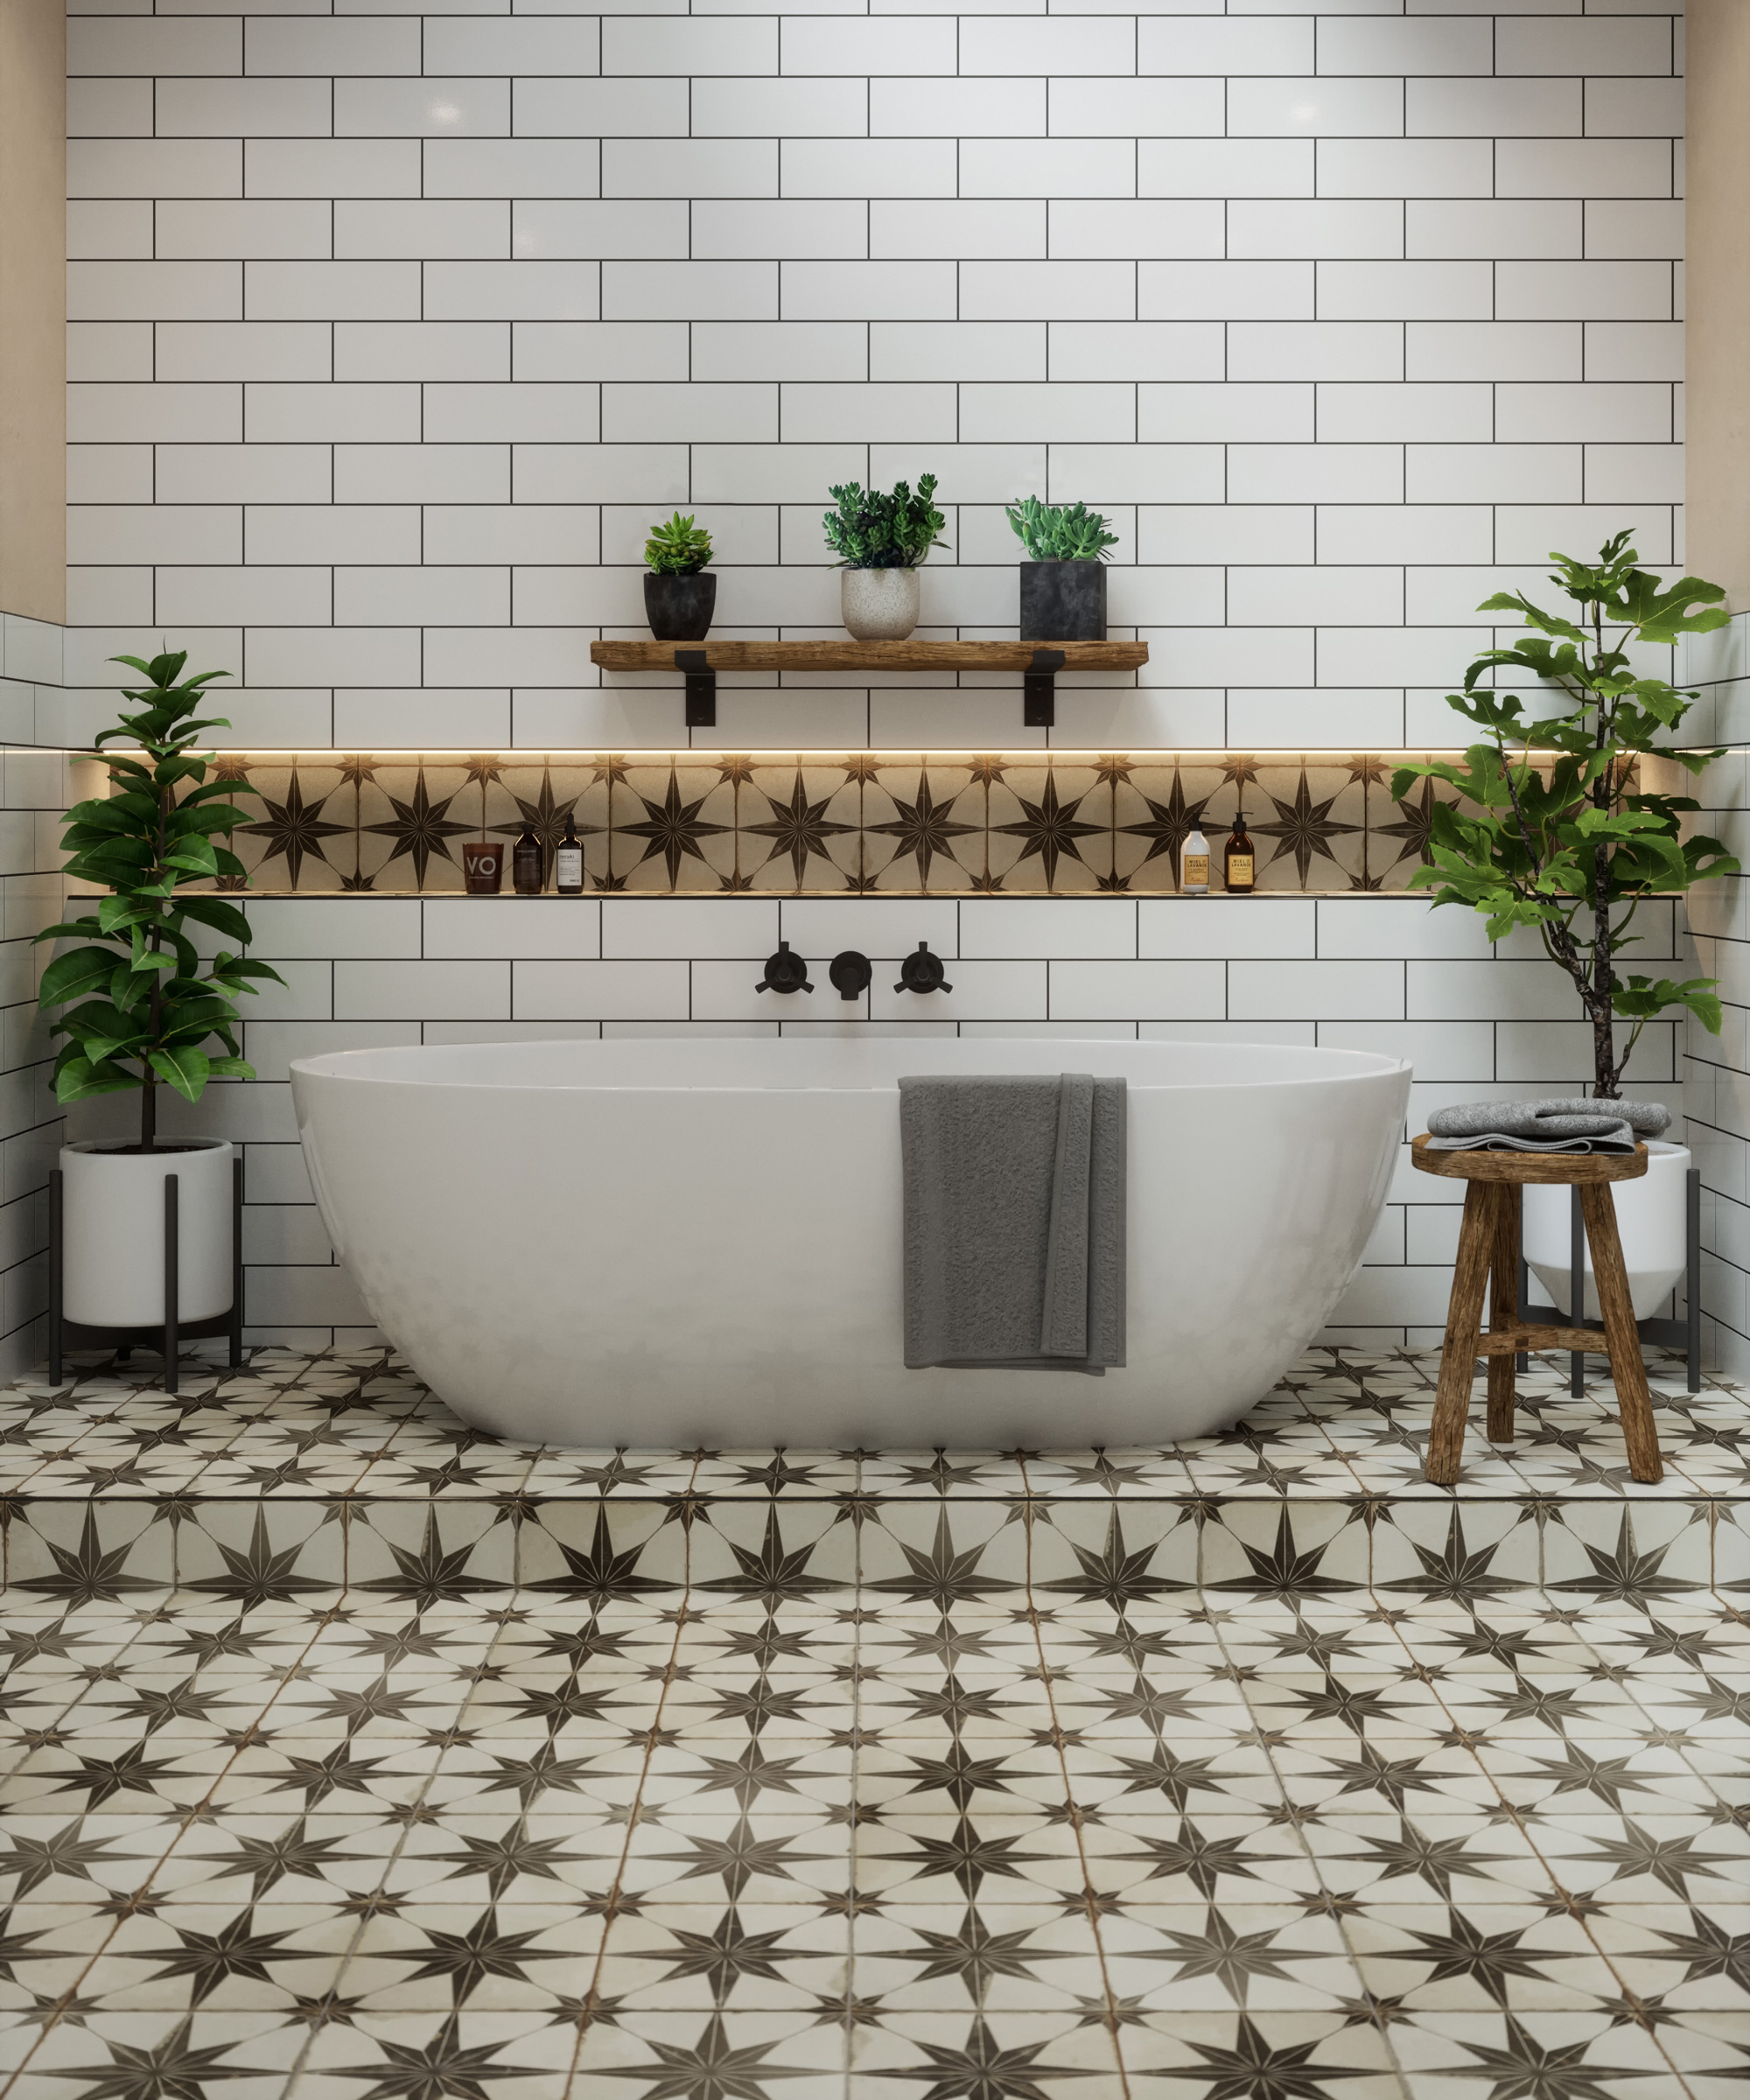 Bathroom Tile Ideas 32 New Looks To, Bathroom Tile Designs Around Bathtub